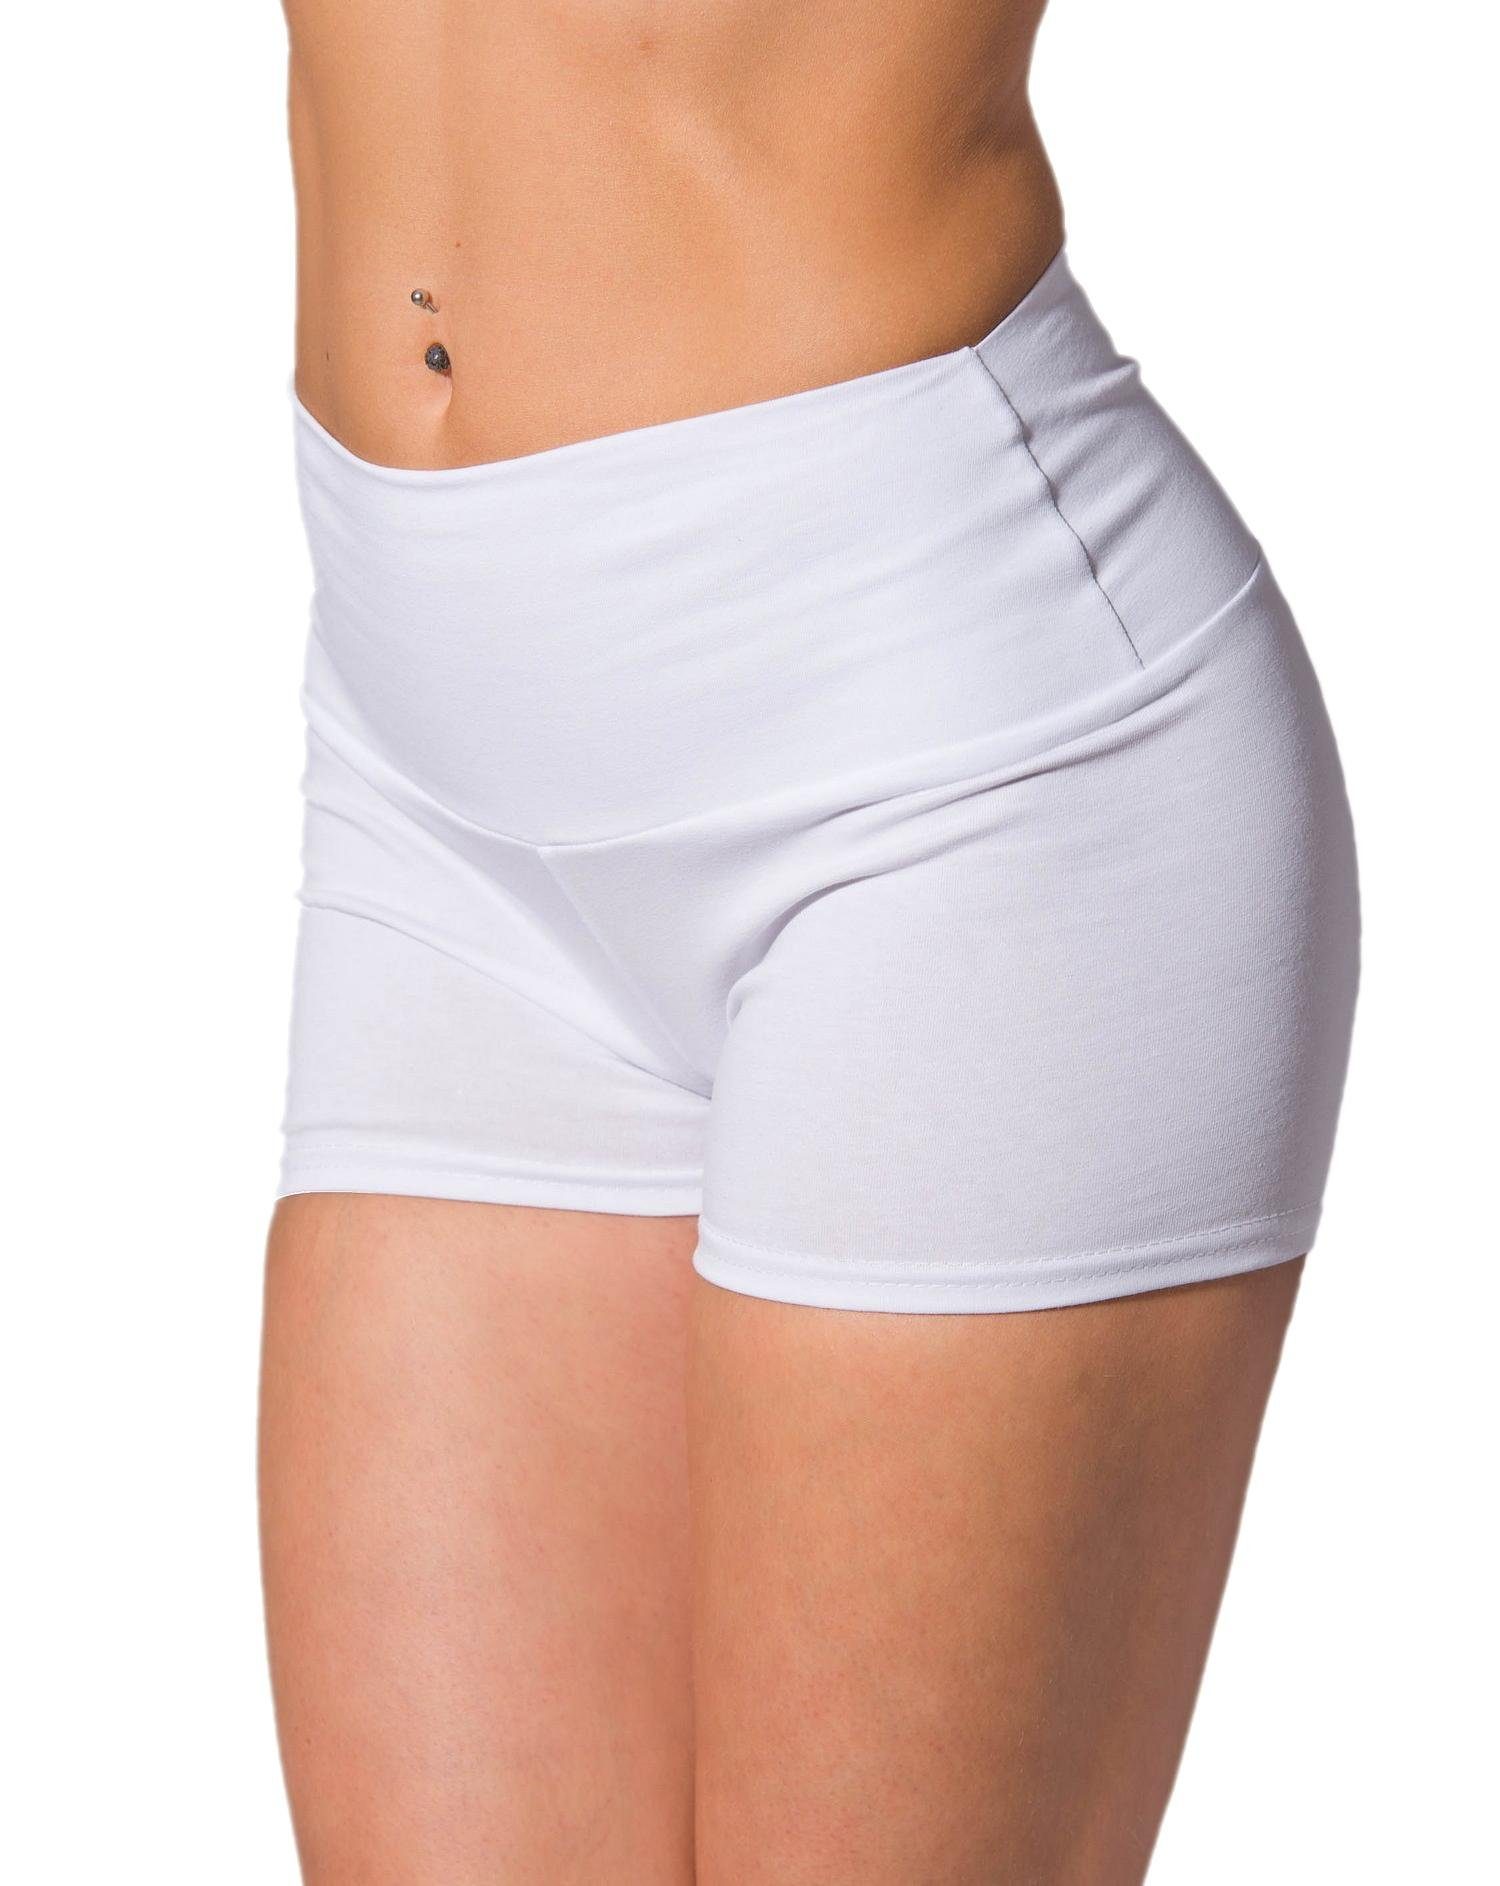 Alkato Yogashorts Alkato Damen Shorts mit Hohem Bund Hotpants Radlerhose Long Shorts Weiß